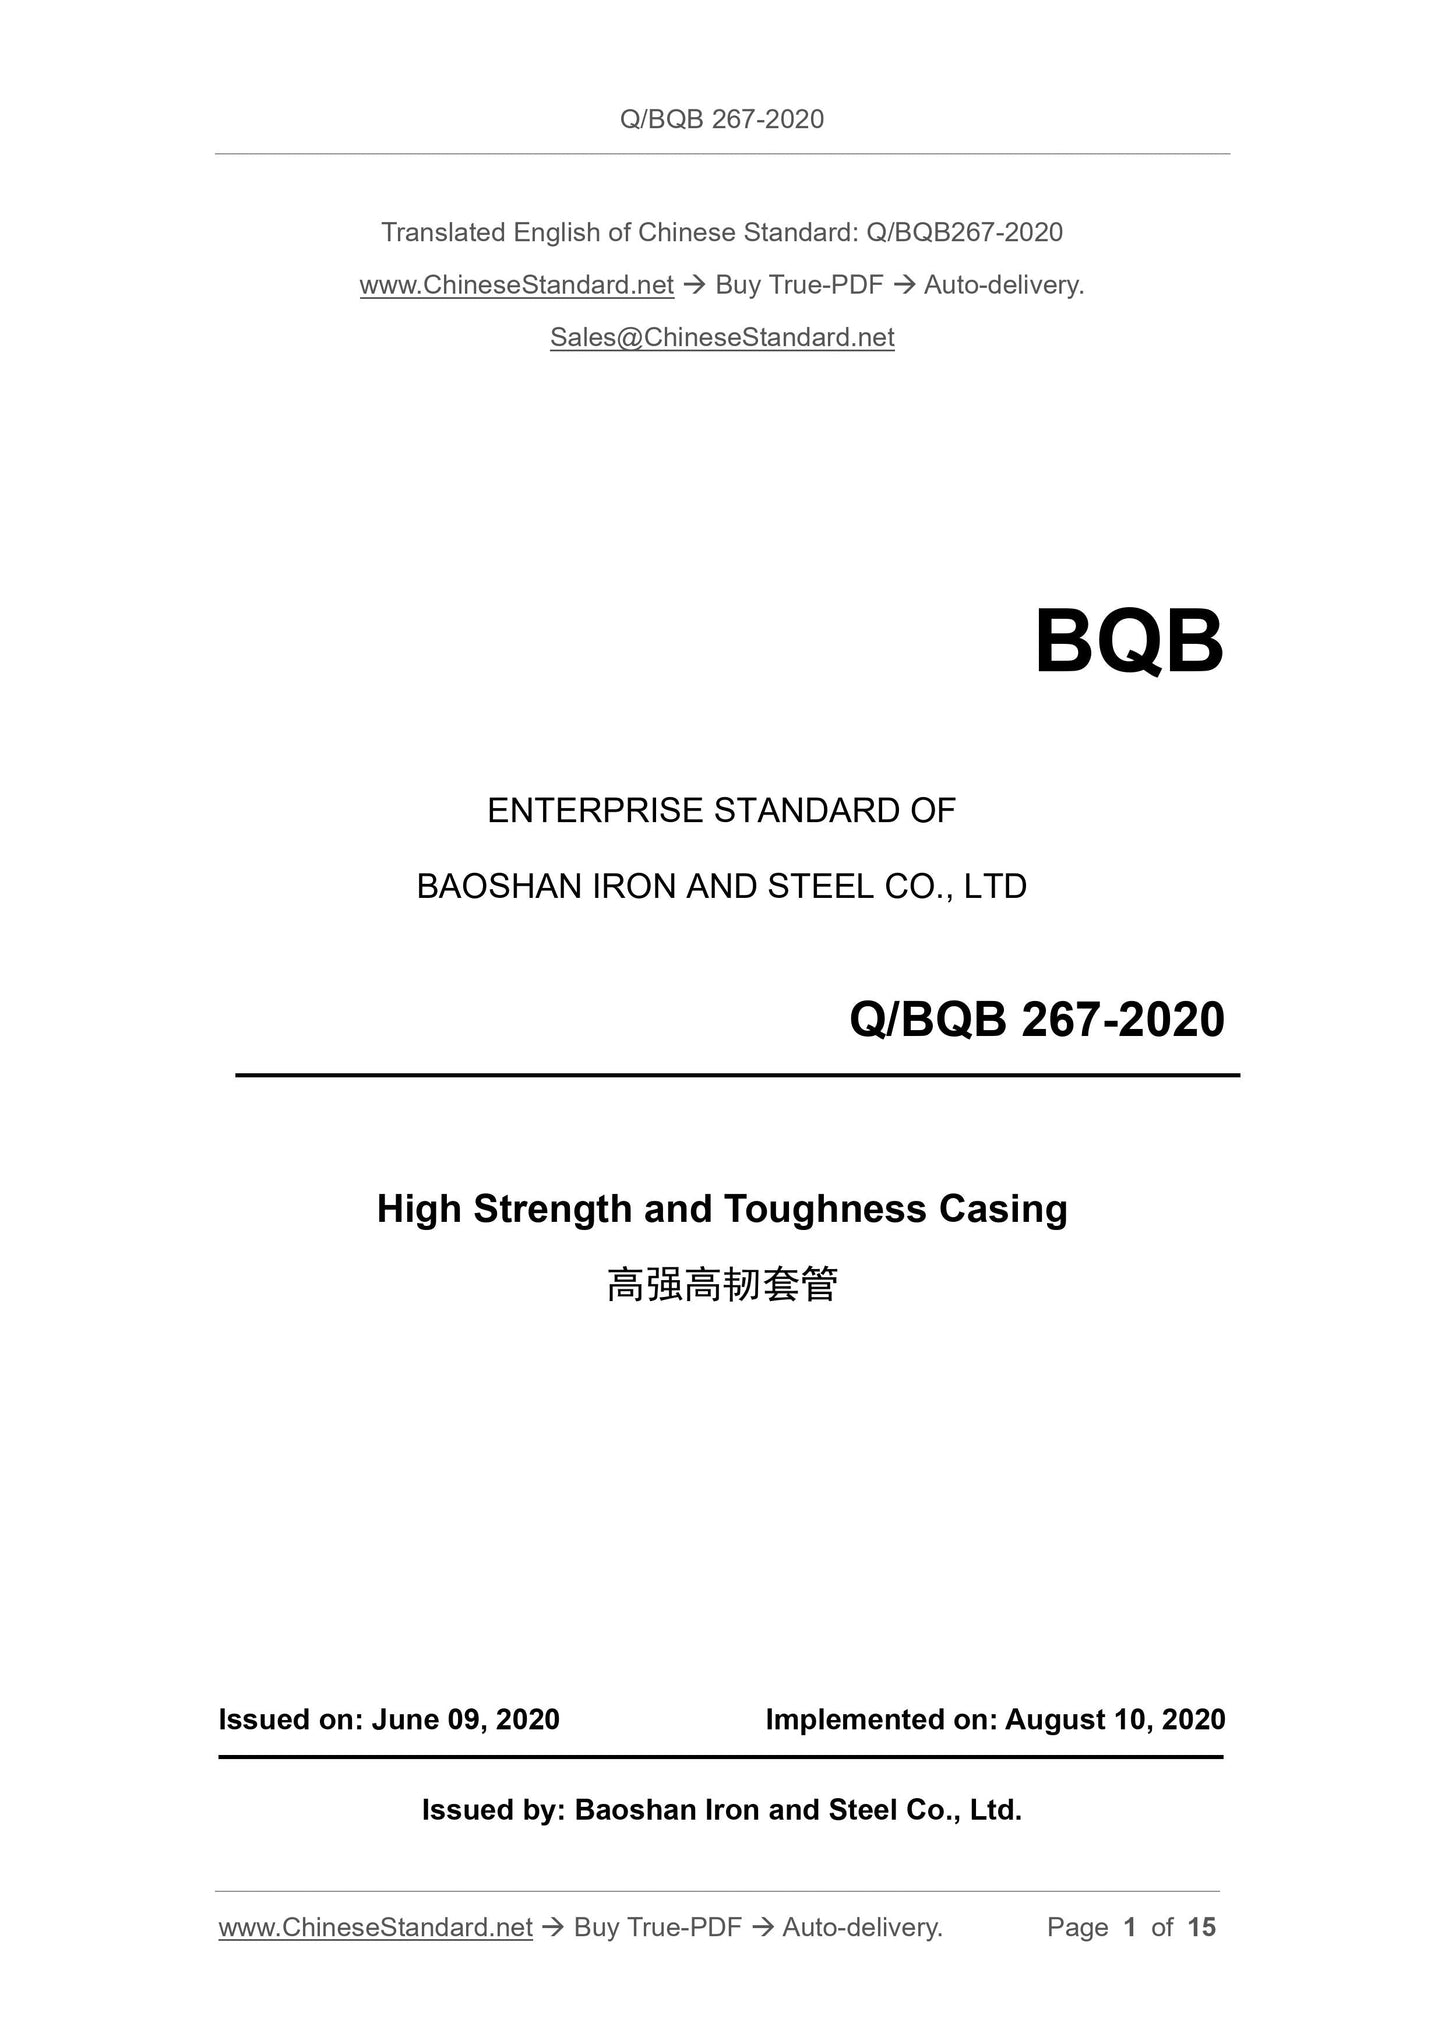 Q/BQB 267-2020 Page 1